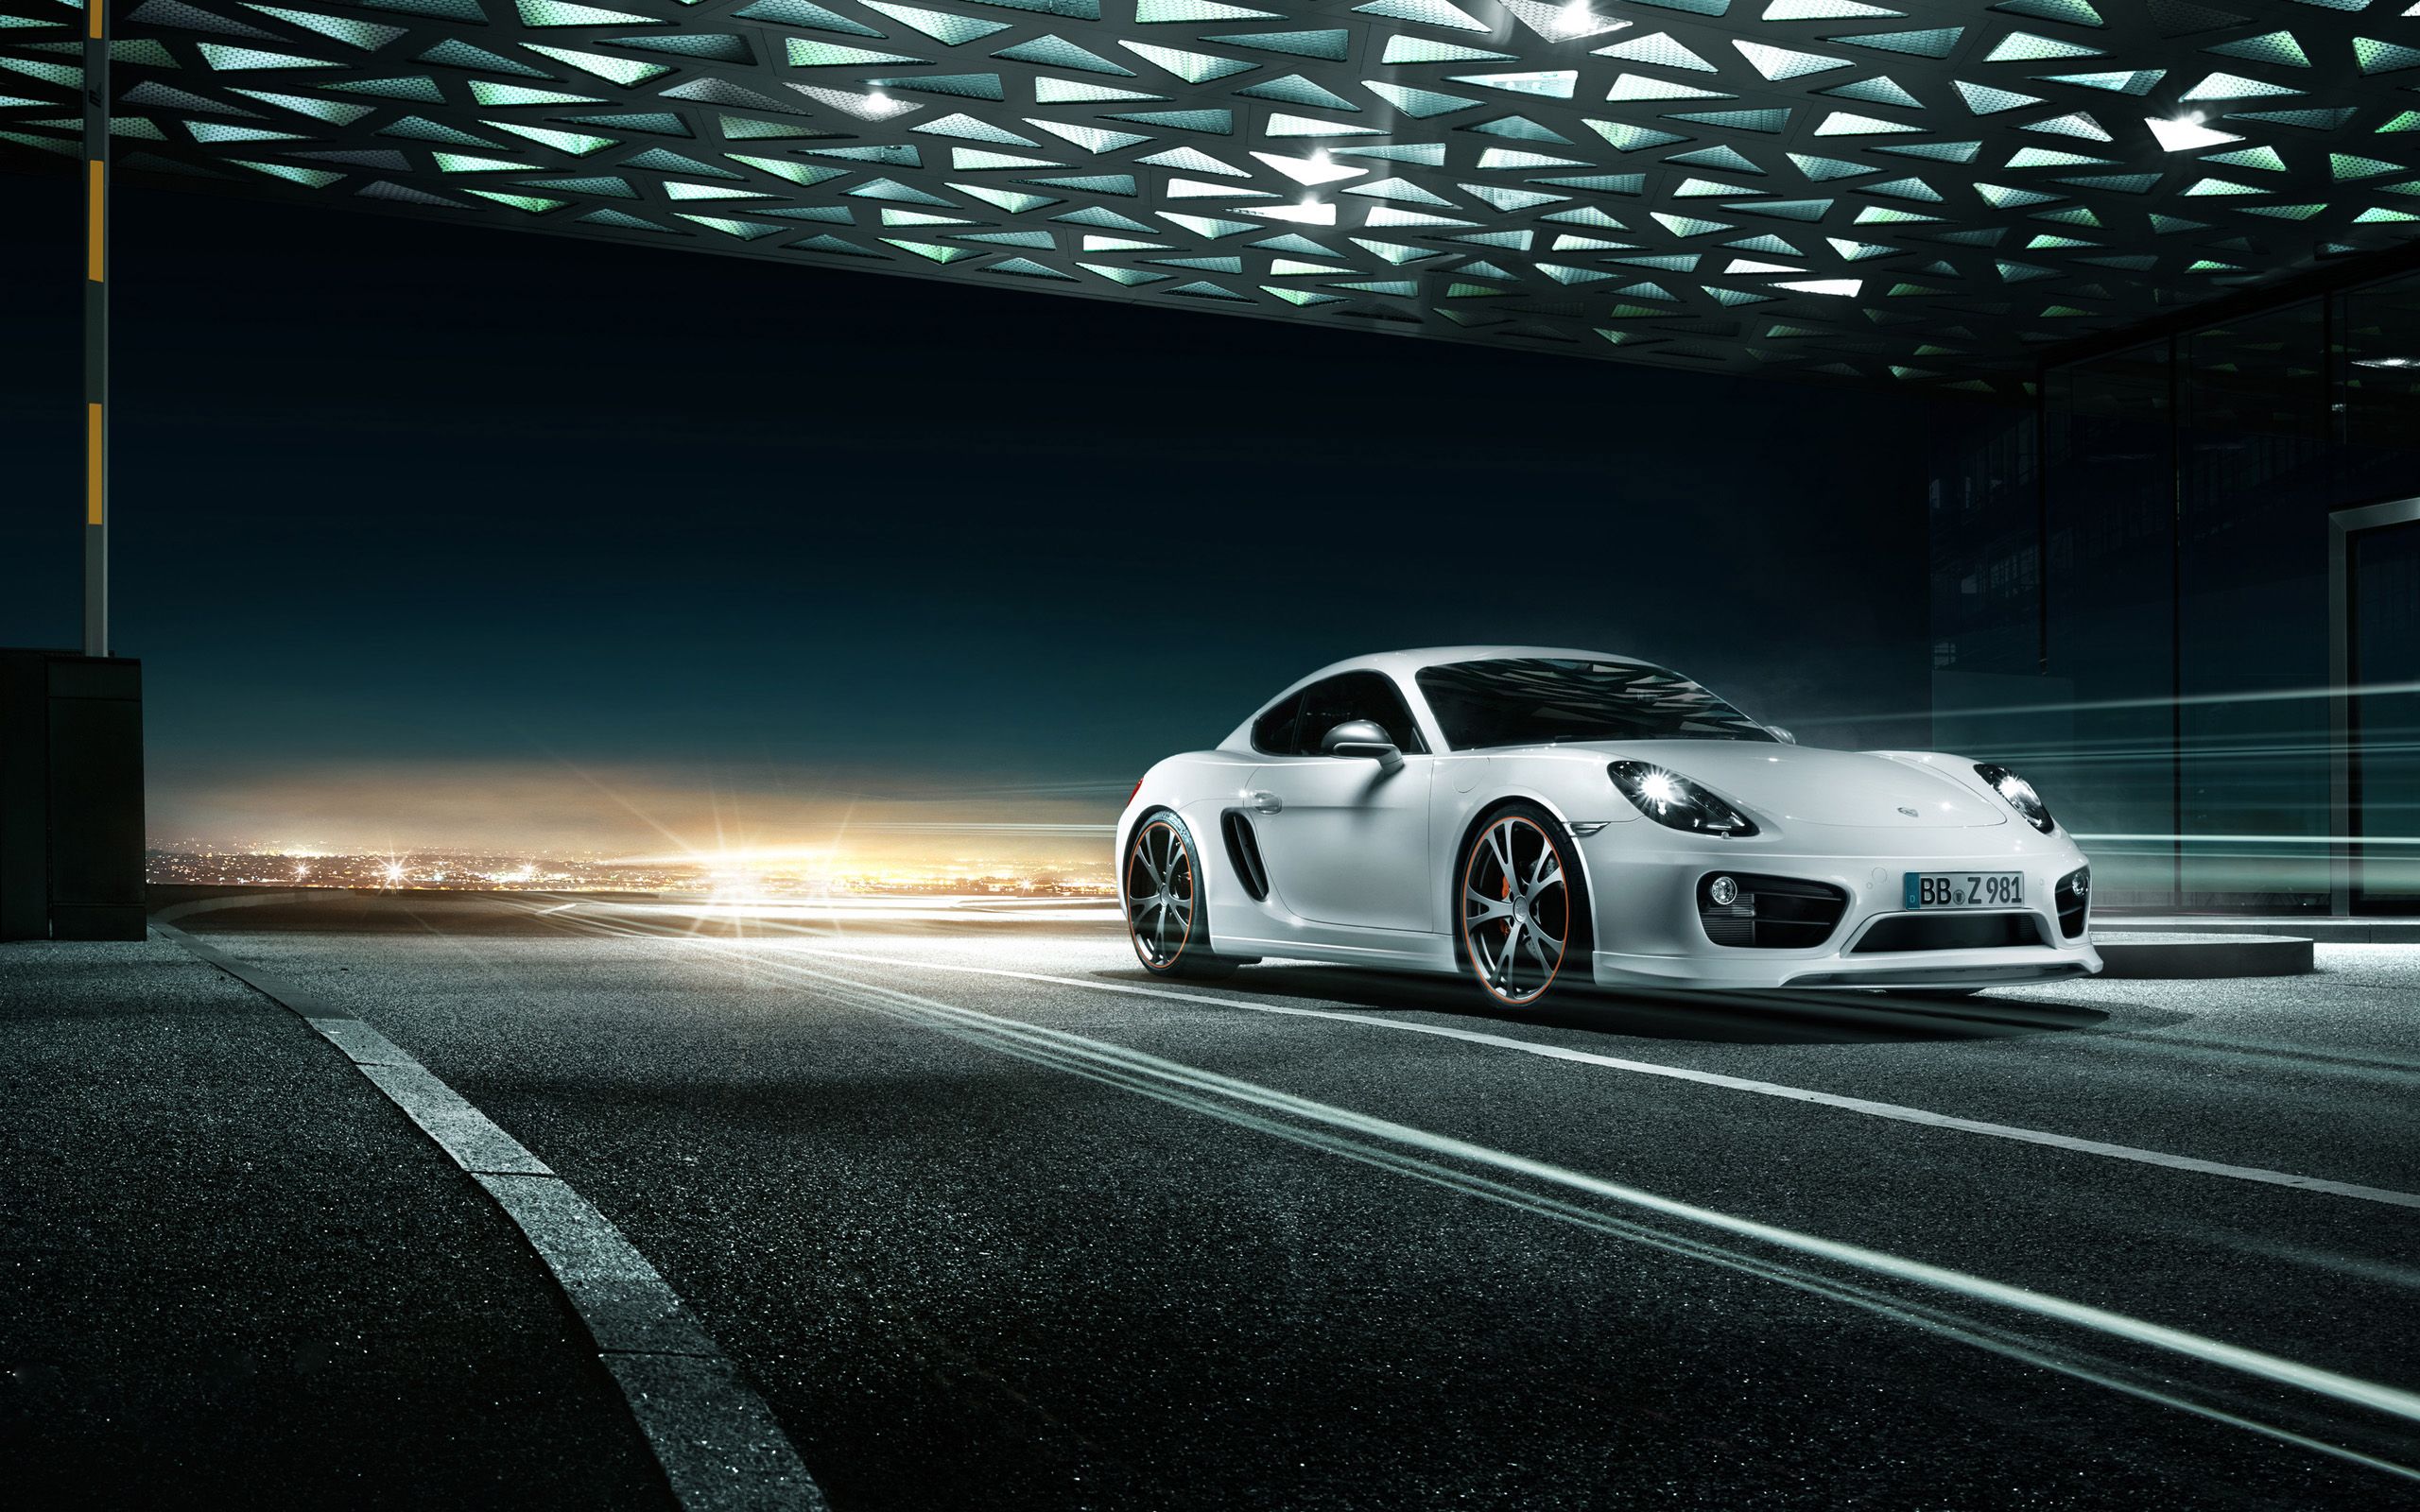 Bức ảnh xe Porsche này thực sự gây ấn tượng với vẻ đẹp hoàn hảo của nó. Được trang bị đầy đủ các tính năng tiện nghi, xe sẽ mang đến cho bạn cảm giác thú vị và tuyệt vời khi lái trên đường.